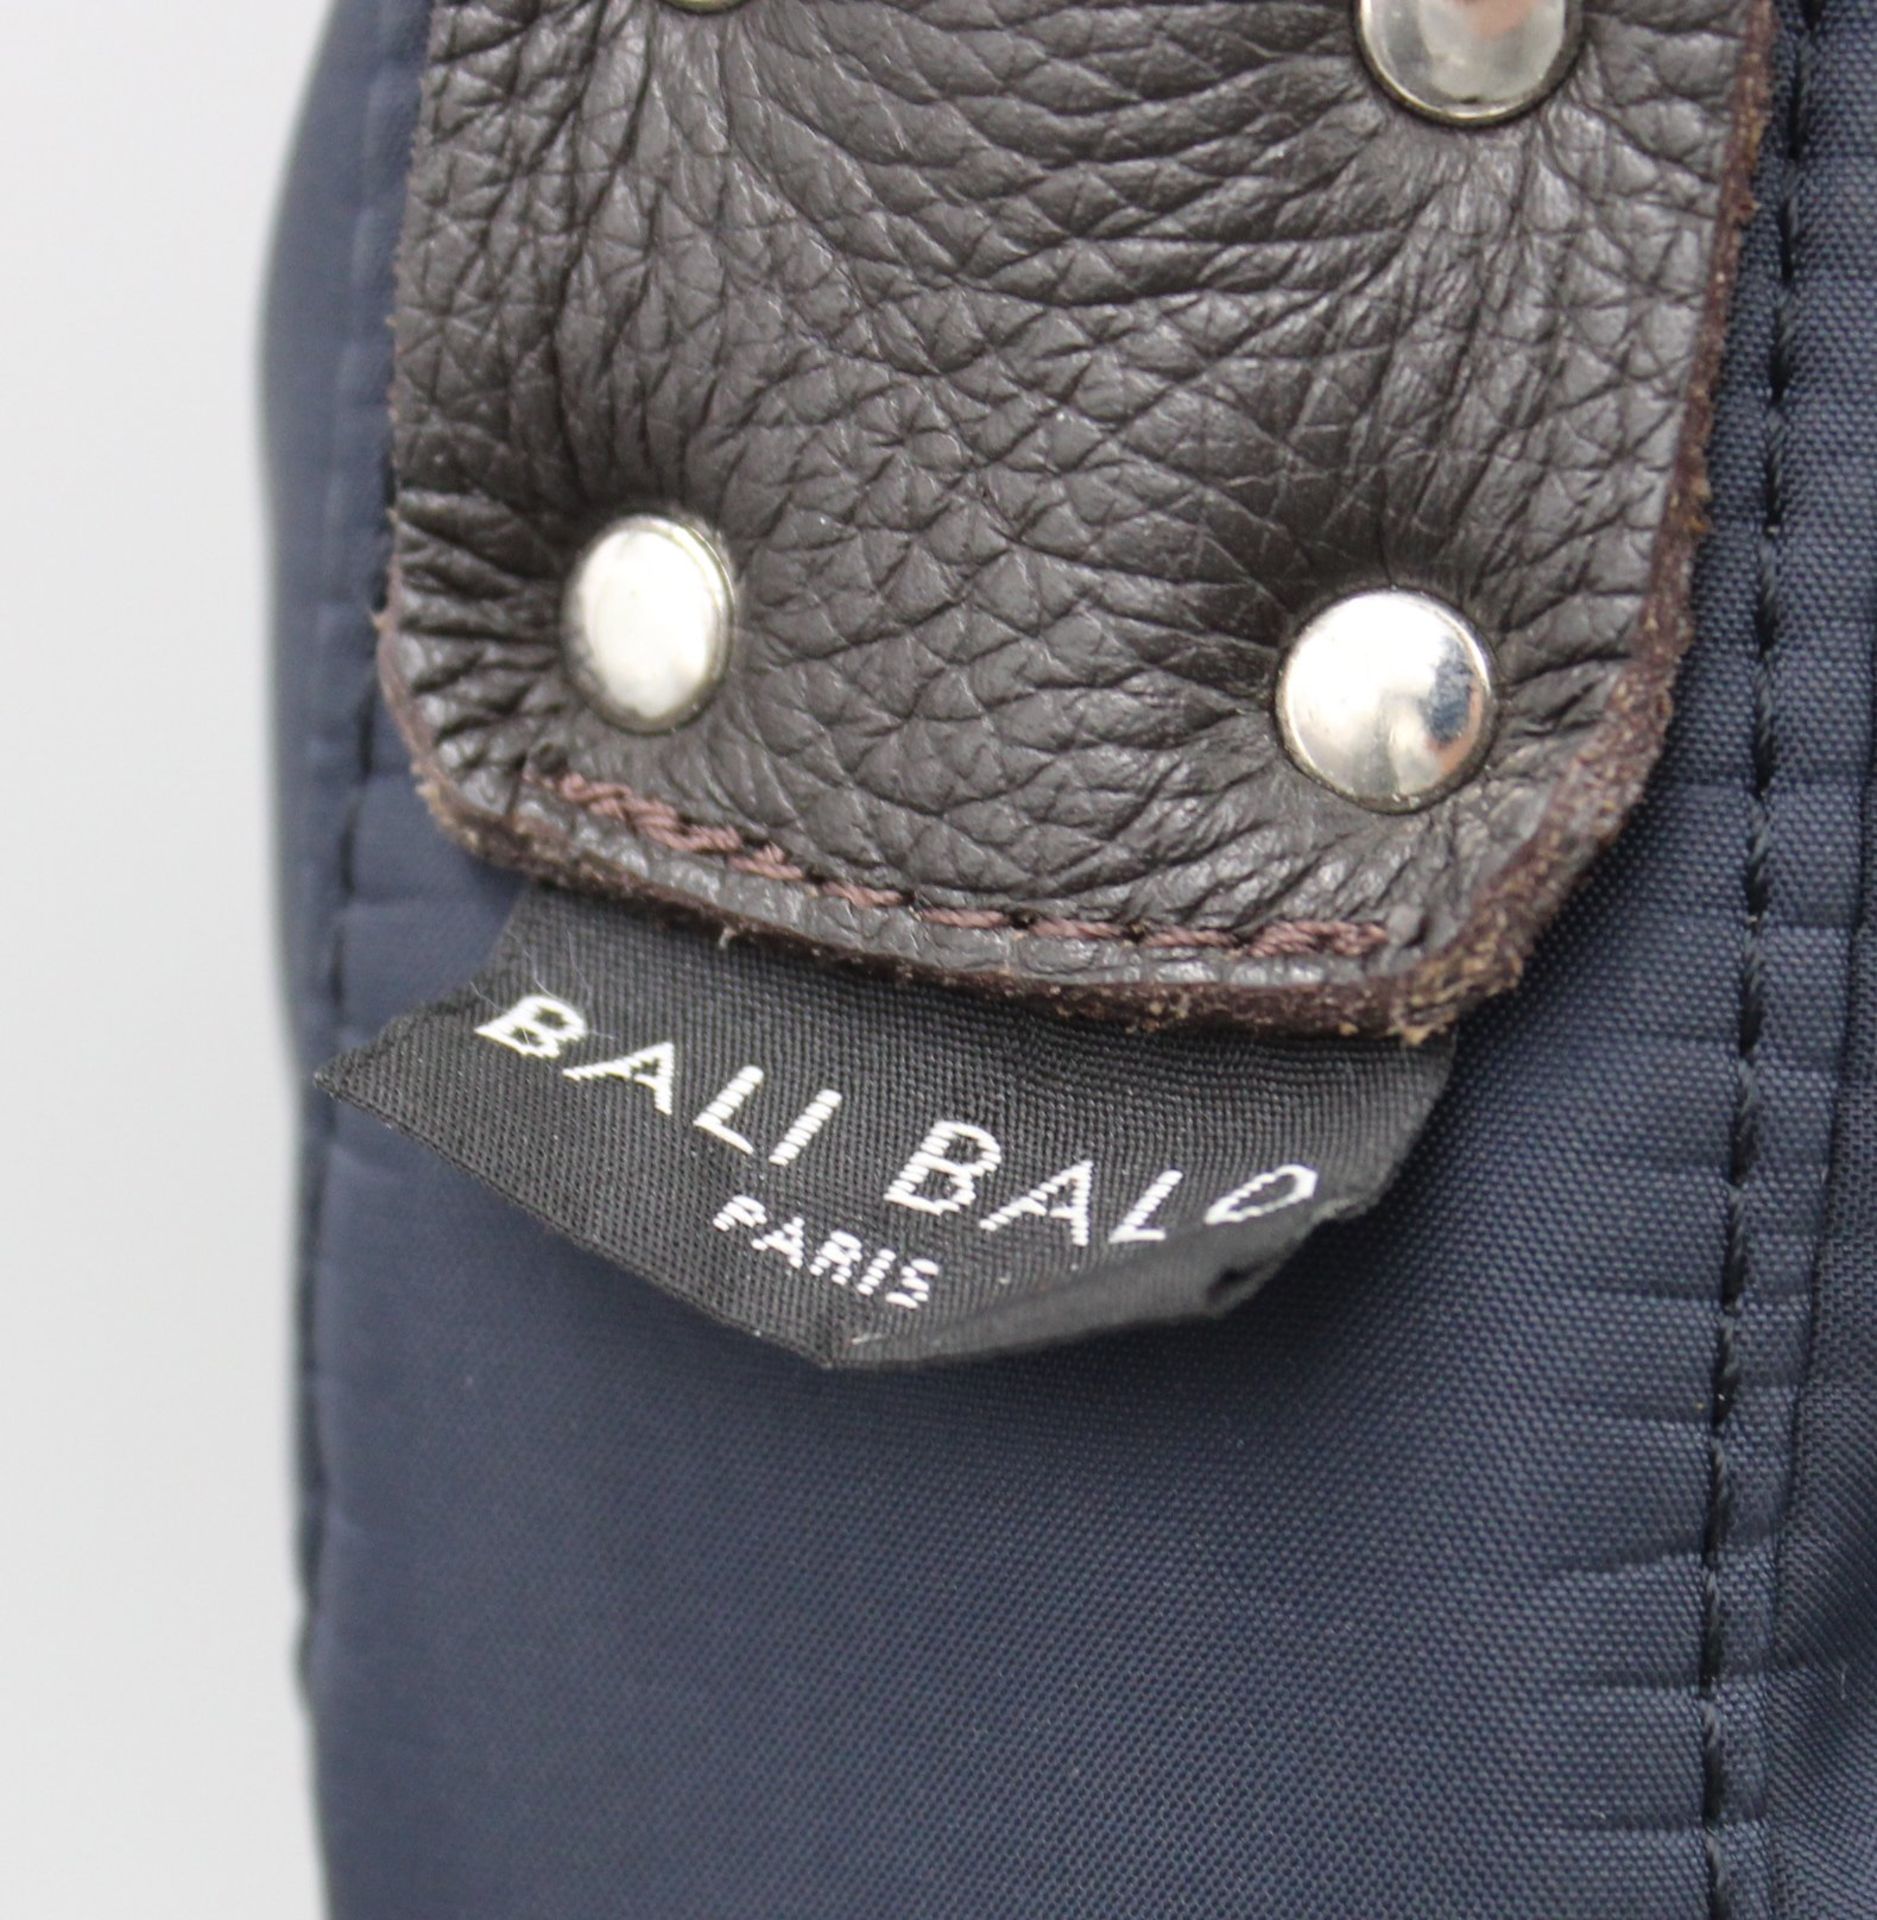 Handtasche, BALI BALO Paris, guter Zustand, ca. 22 x 34cm. - Bild 2 aus 4